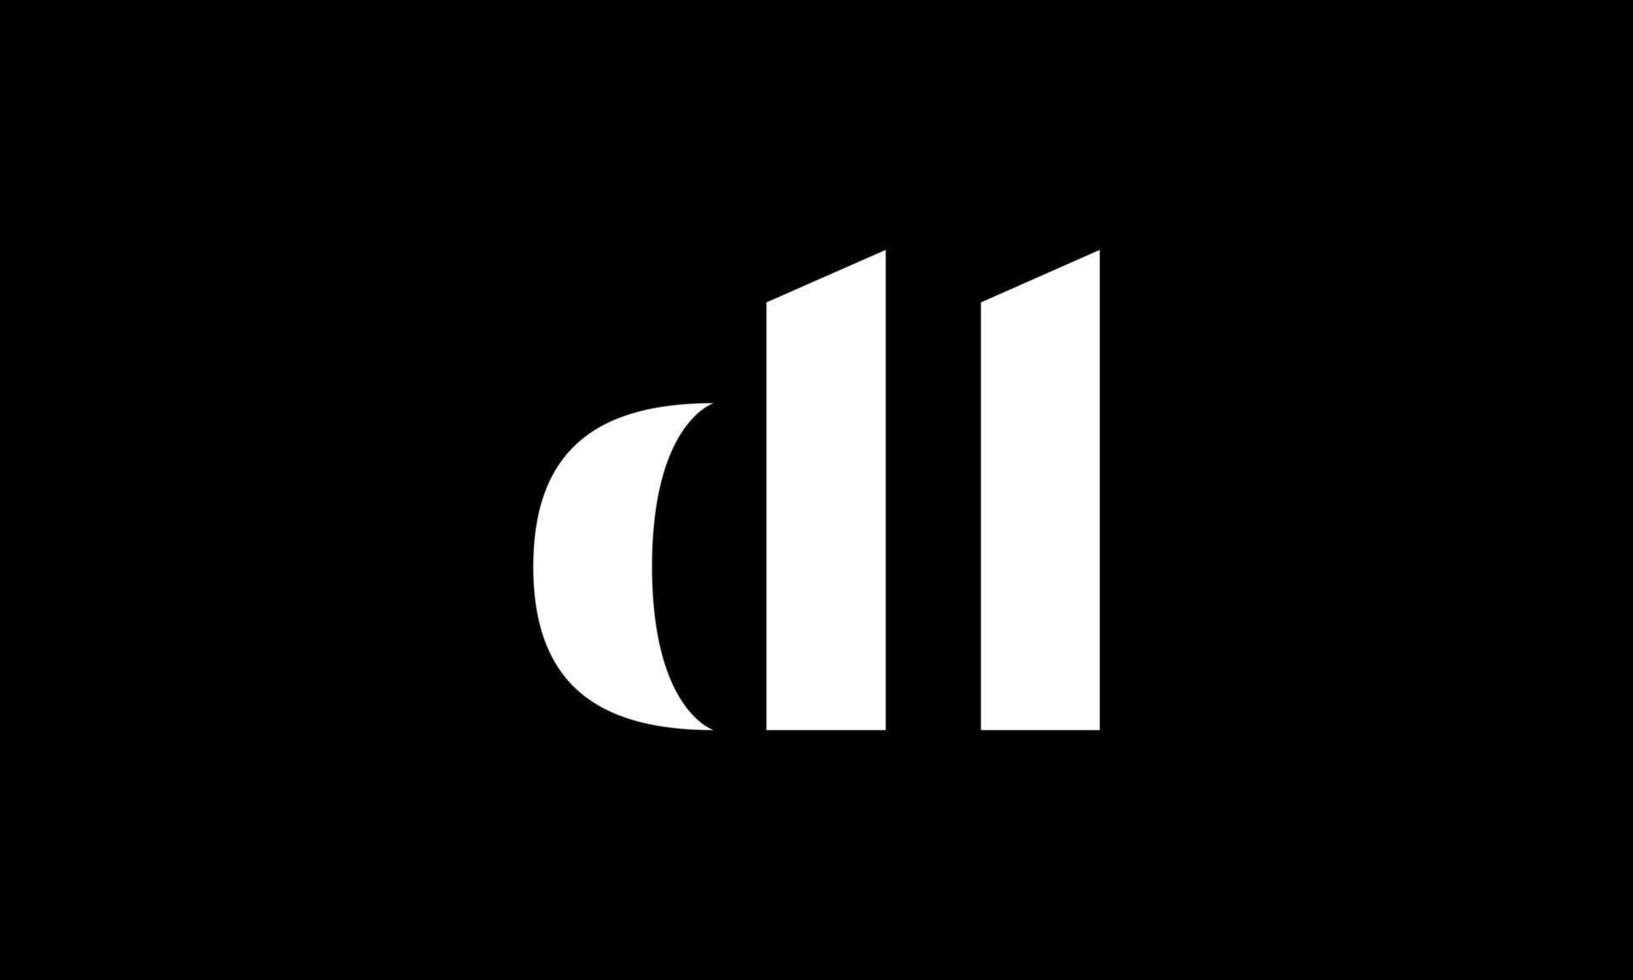 création de logo lettre initiale dl sur fond noir. vecteur professionnel.